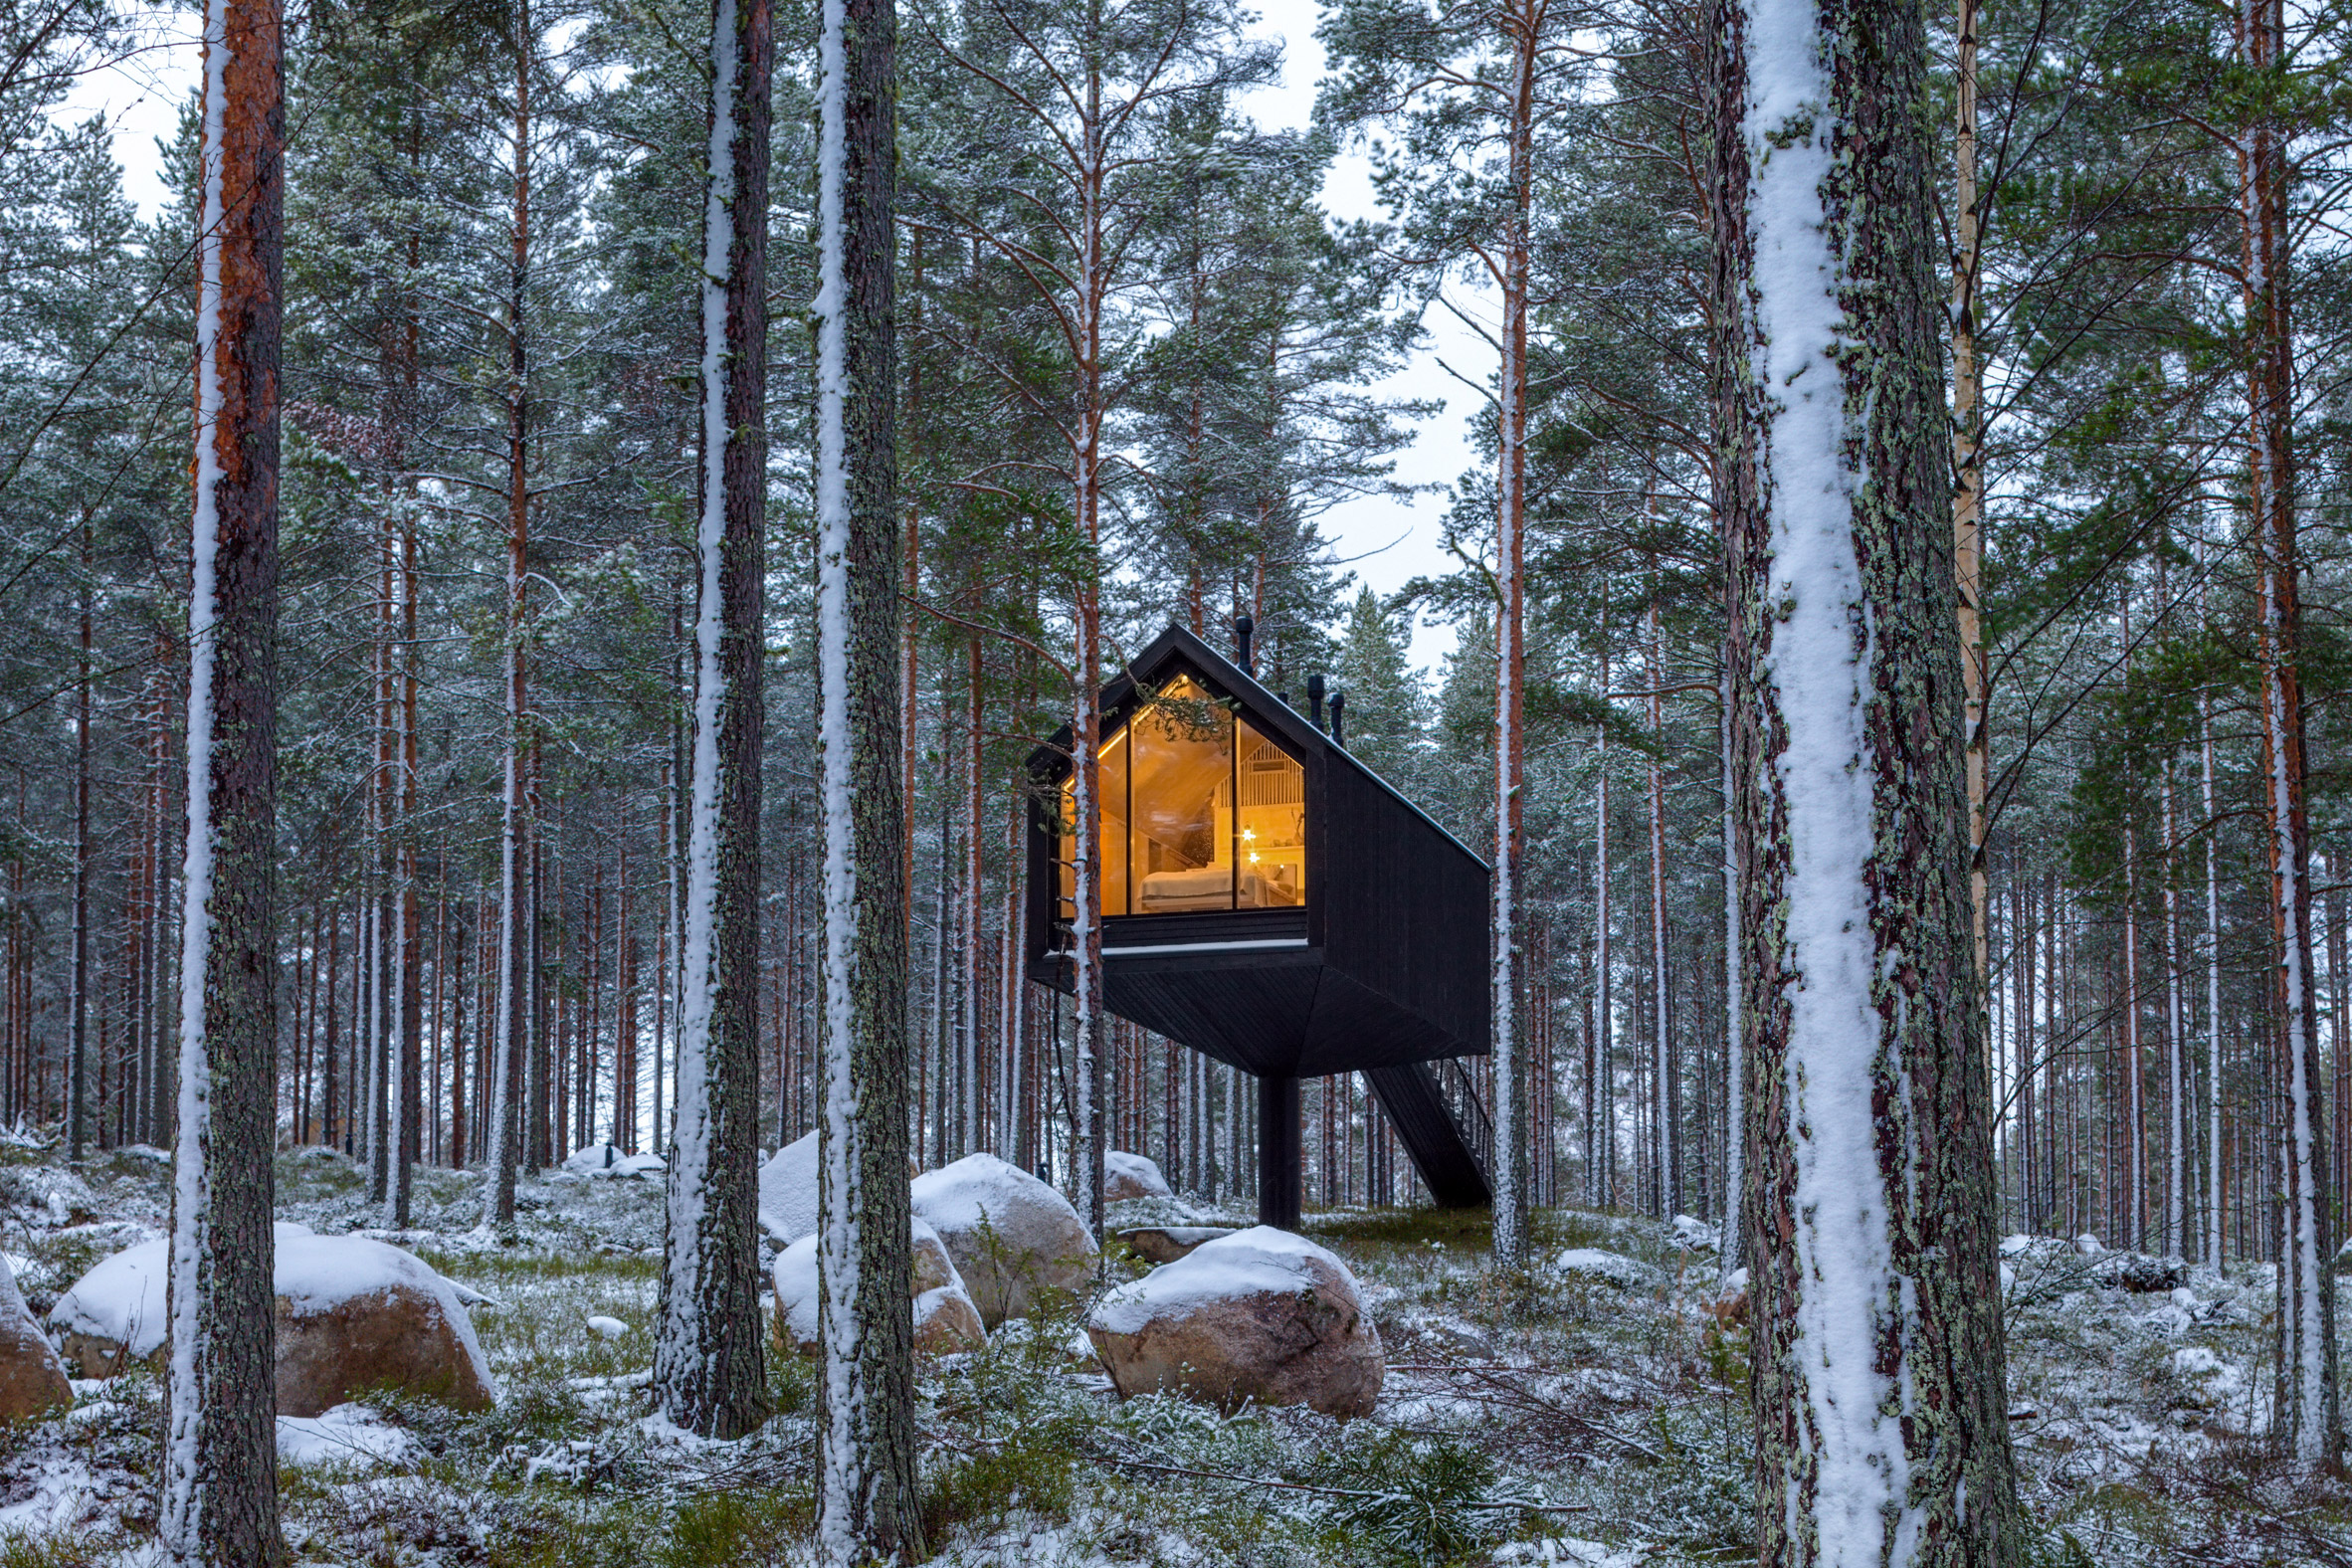 Cabana de cor preta assinada pelo Studio Puisto que elevou-a em uma única coluna. Localizado no Parque Nacional Salamajärvi, na Finlândia.